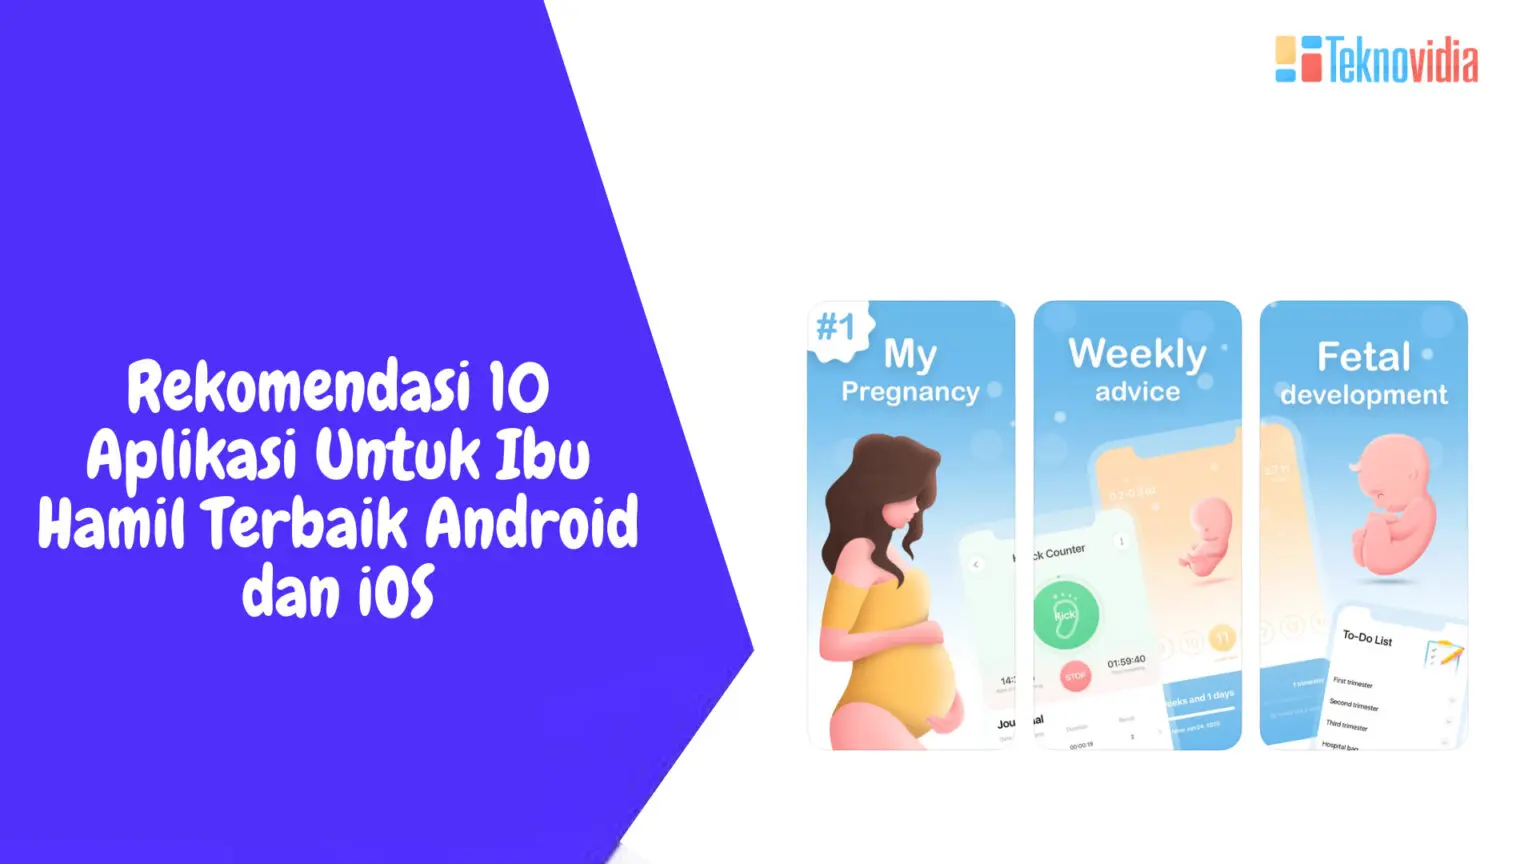 Rekomendasi 10 Aplikasi Untuk Ibu Hamil Terbaik Android dan iOS